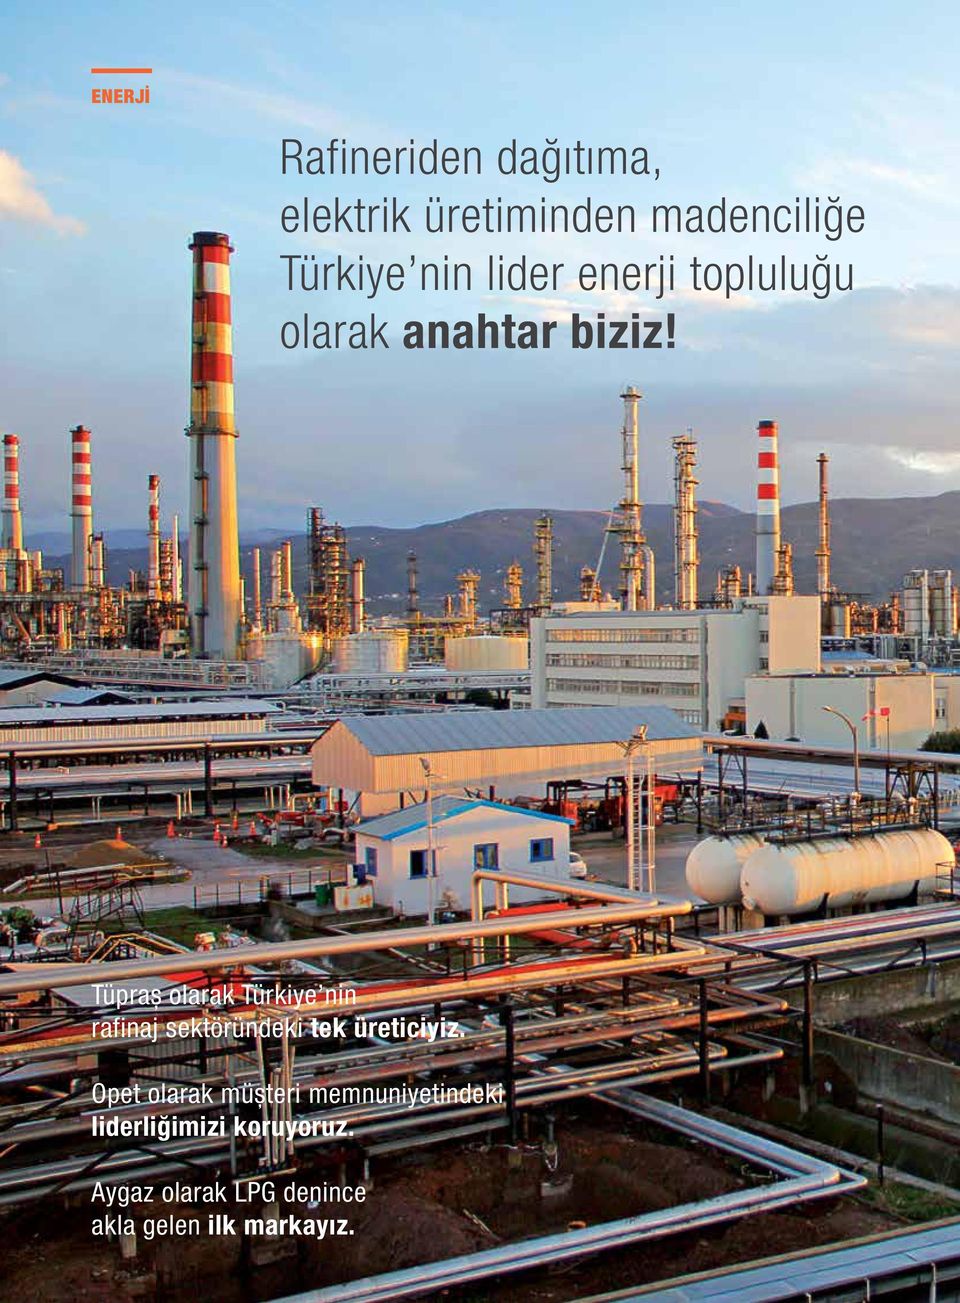 Tüpraş olarak Türkiye nin rafinaj sektöründeki tek üreticiyiz.